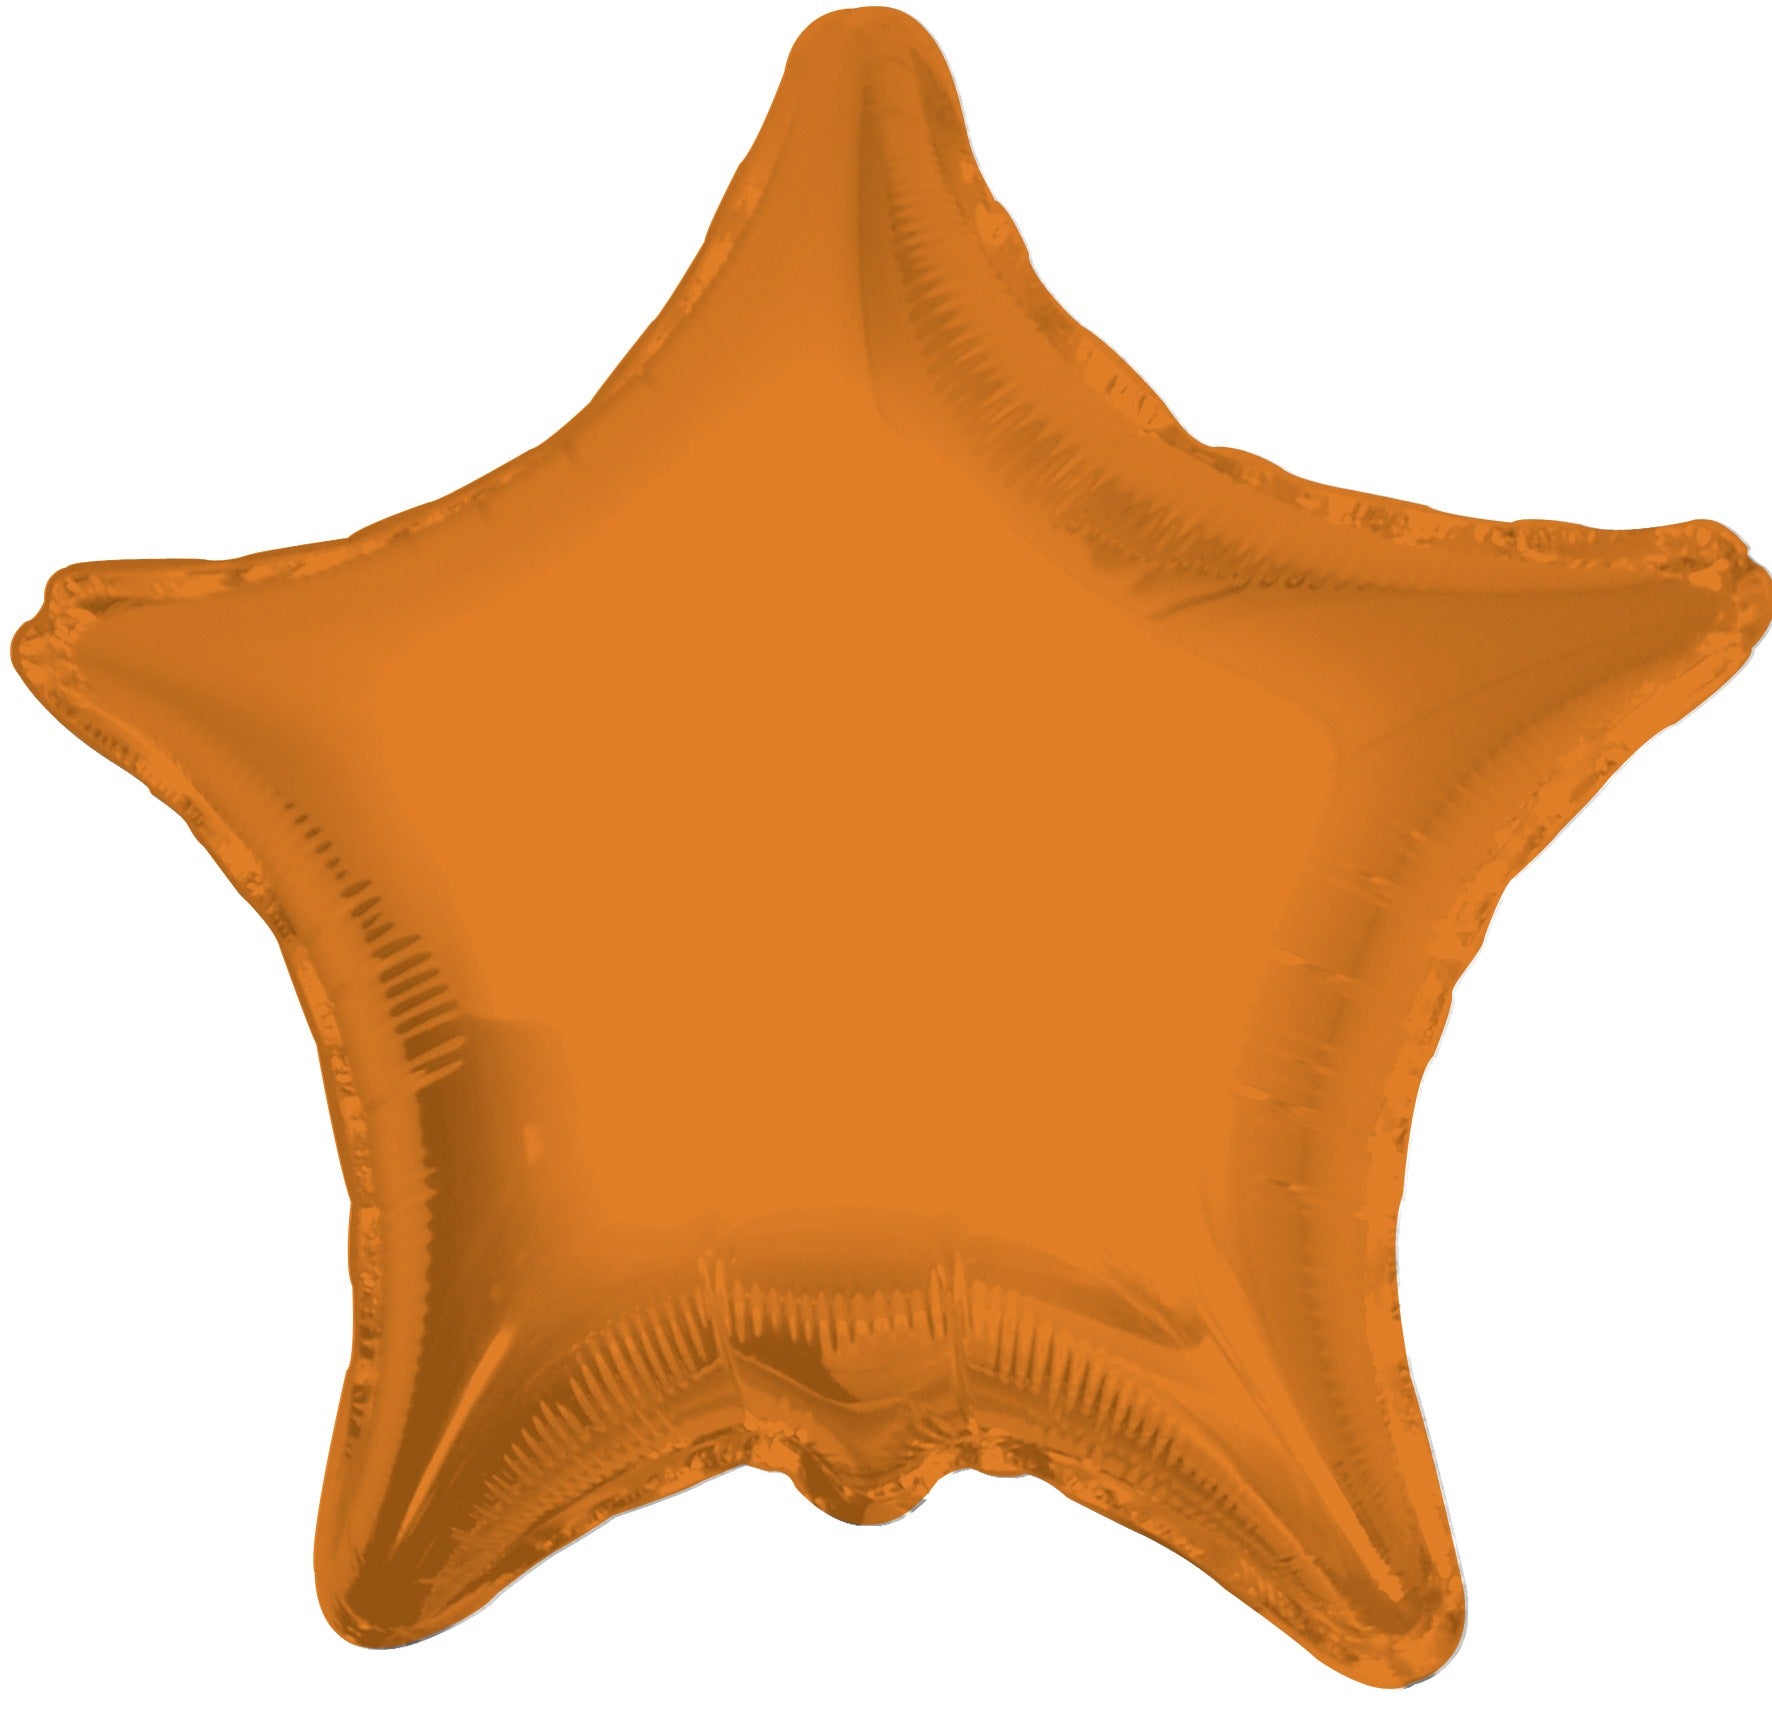 View Orange Star Balloon 22 inch information